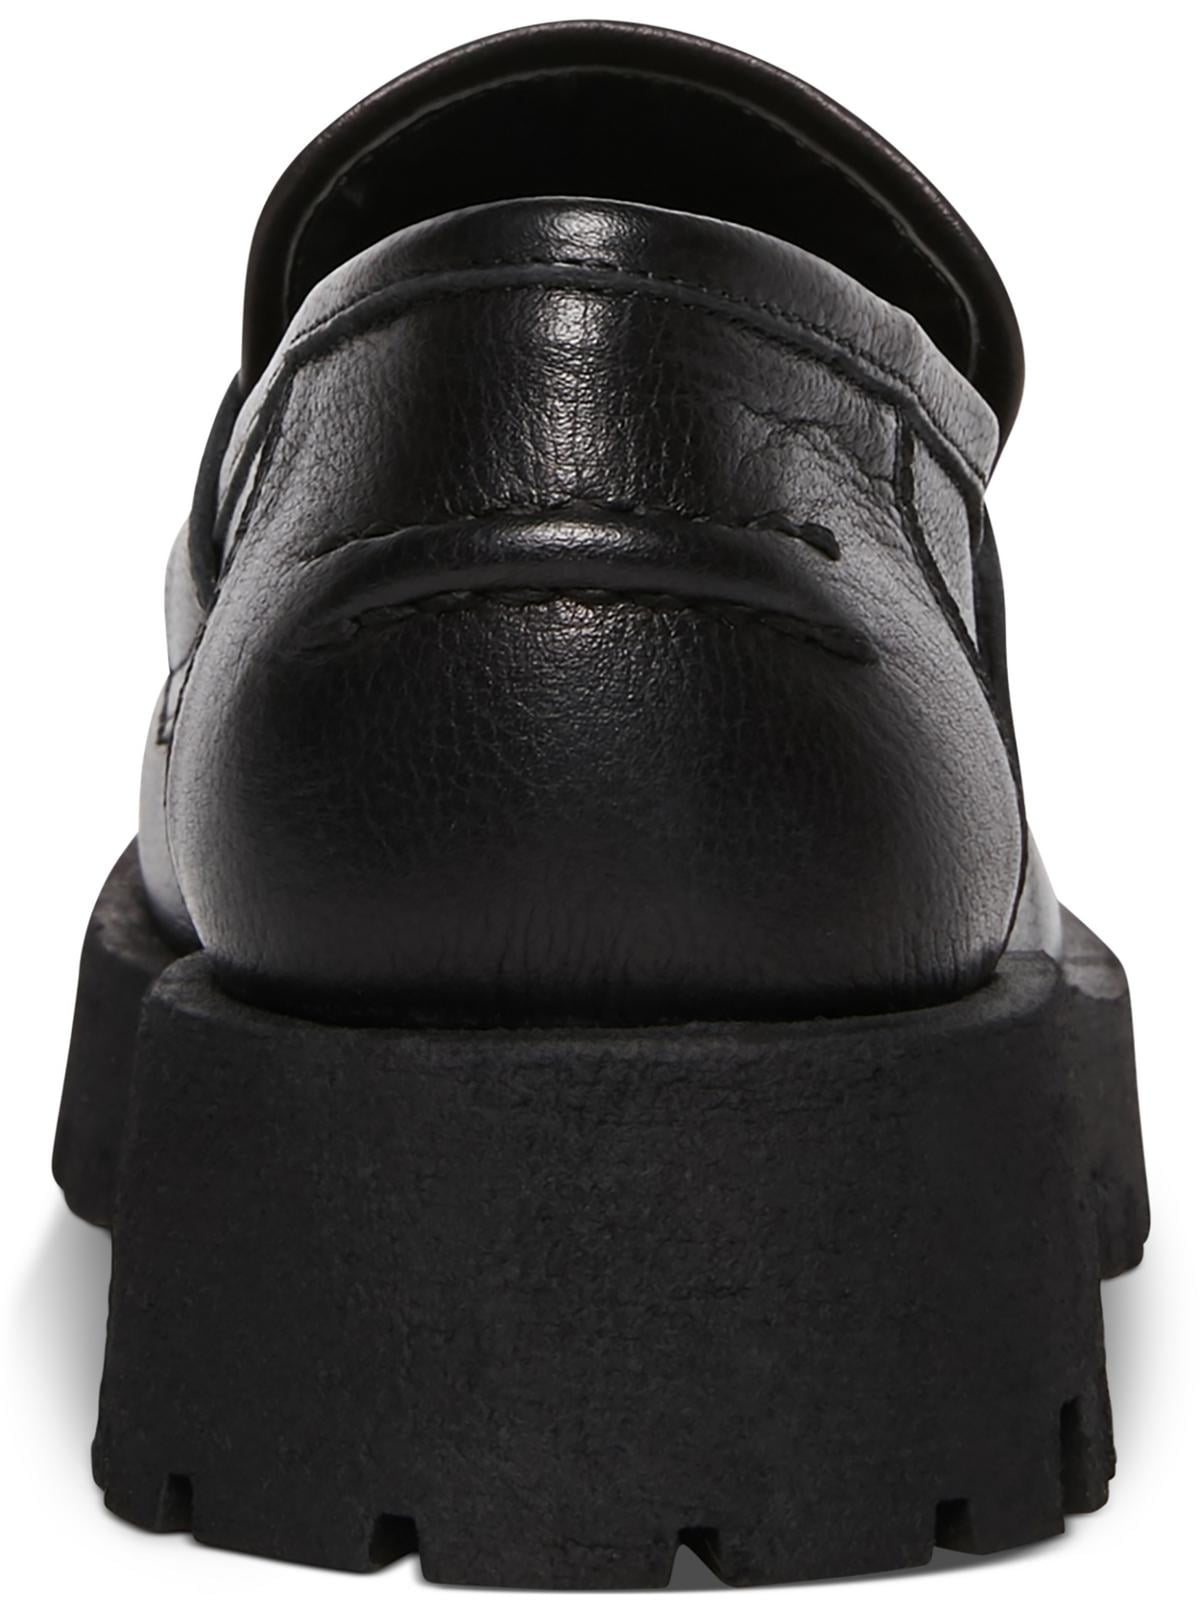 LAWRENCE Black Leather Slip-On Loafer